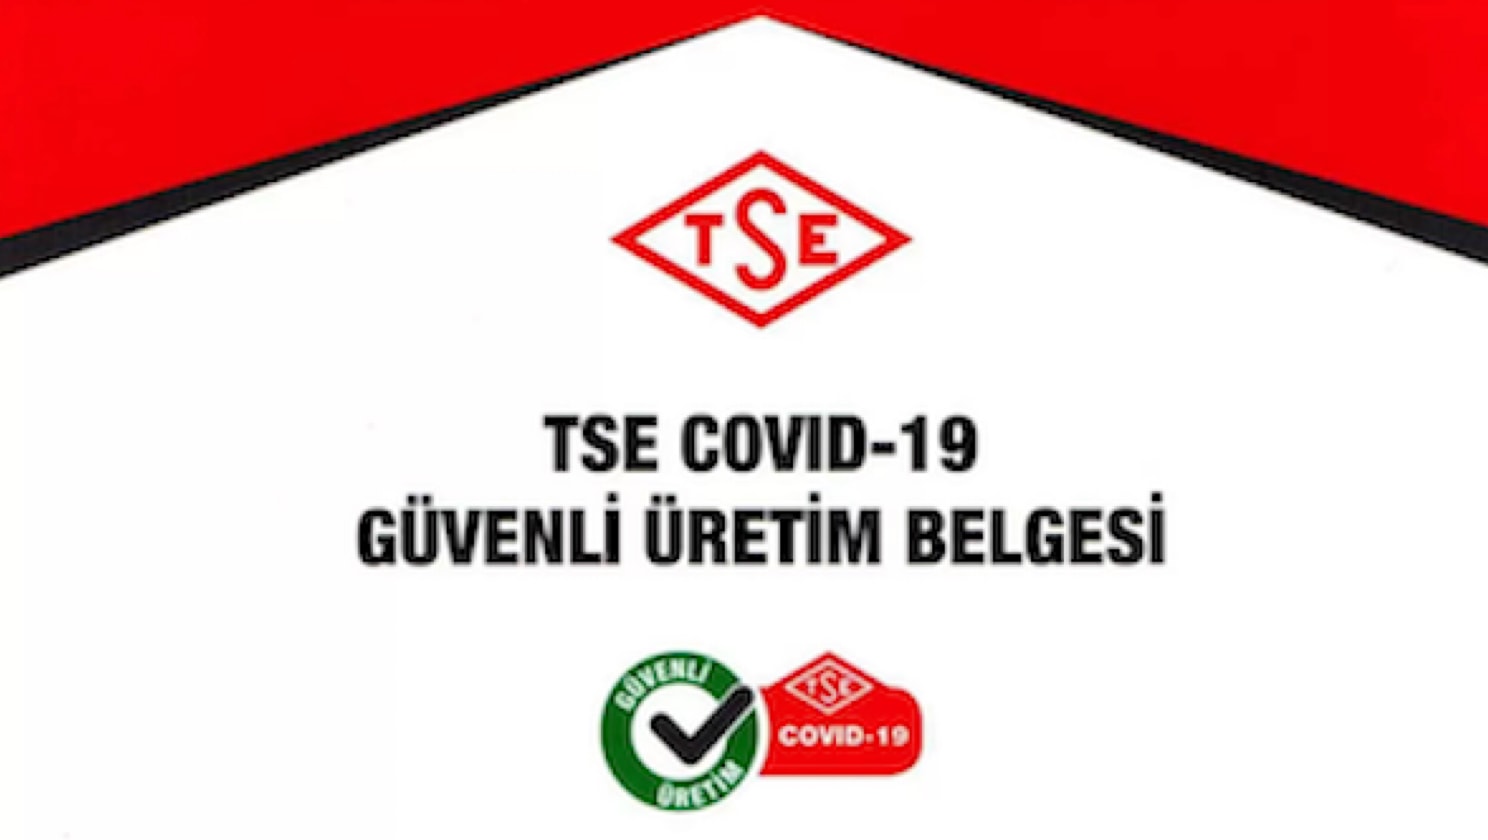 TSE COVID-19 Güvenli Üretim Belgesi'ni Almaya Hak Kazandık